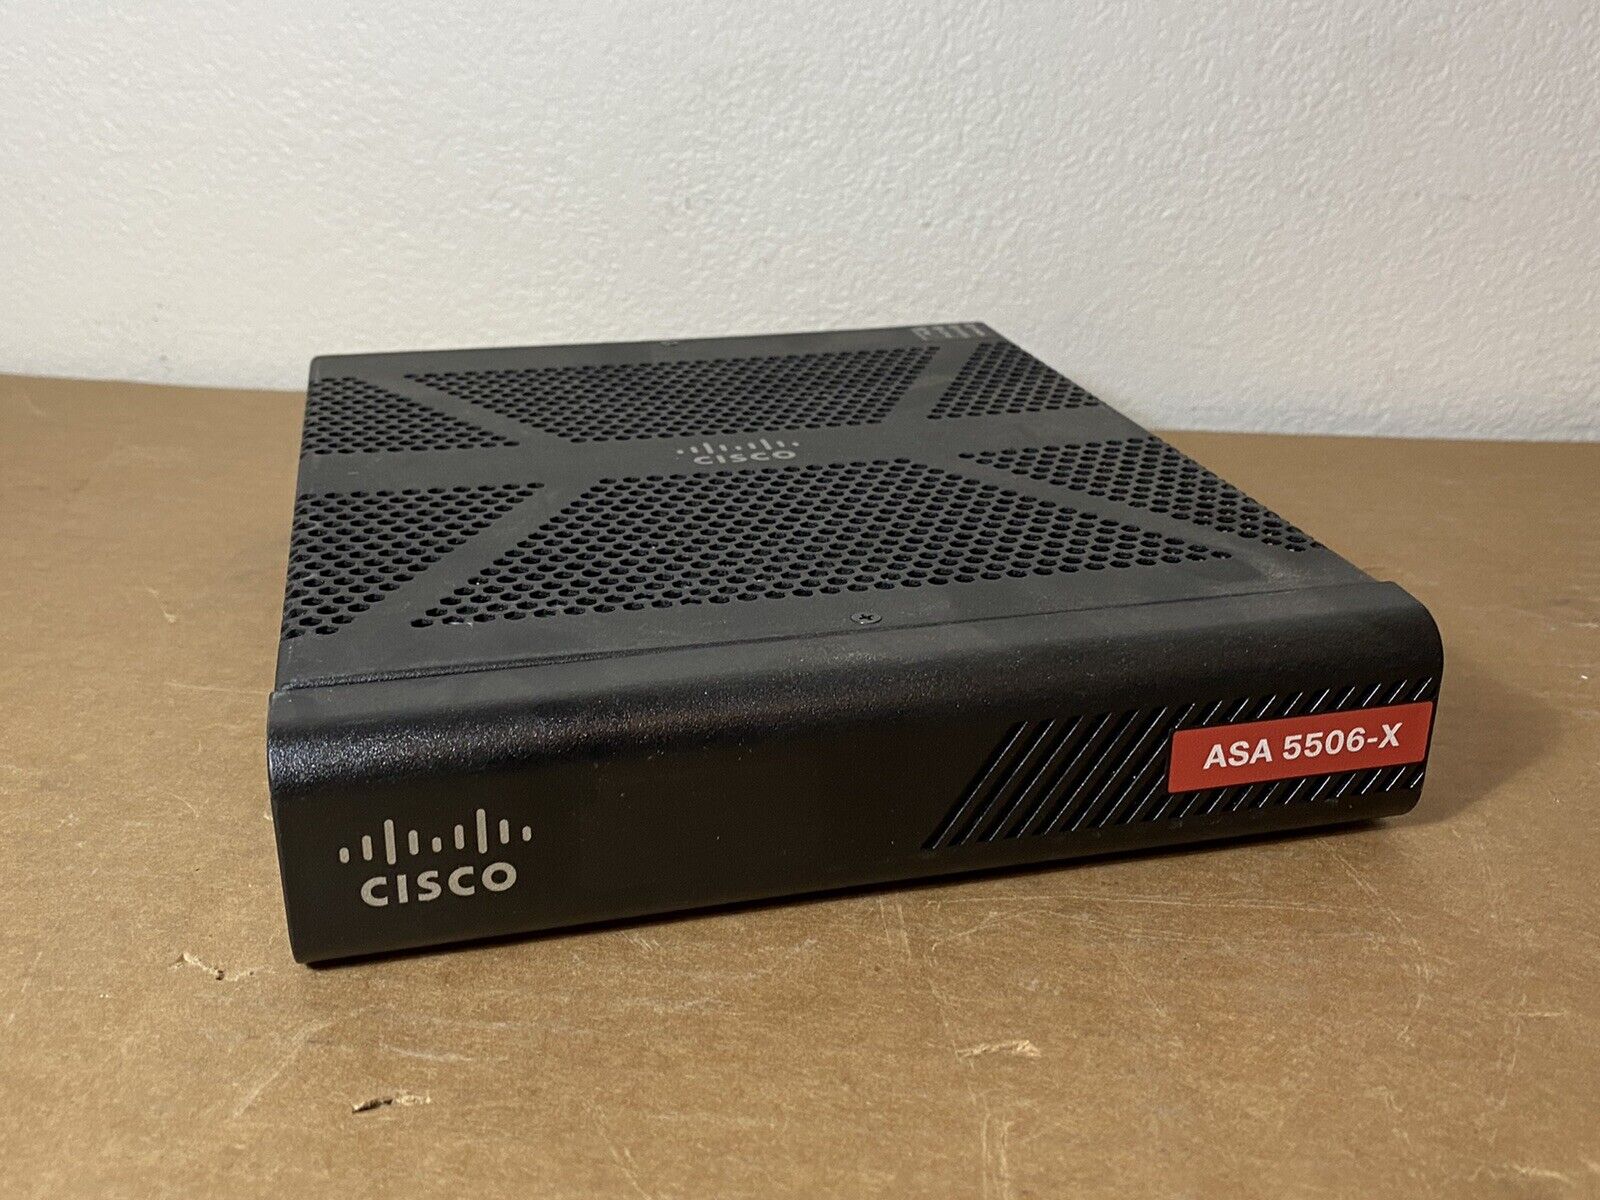 Cisco ASA 5506-X Network Security Firewall Appliance - No Power Adapter